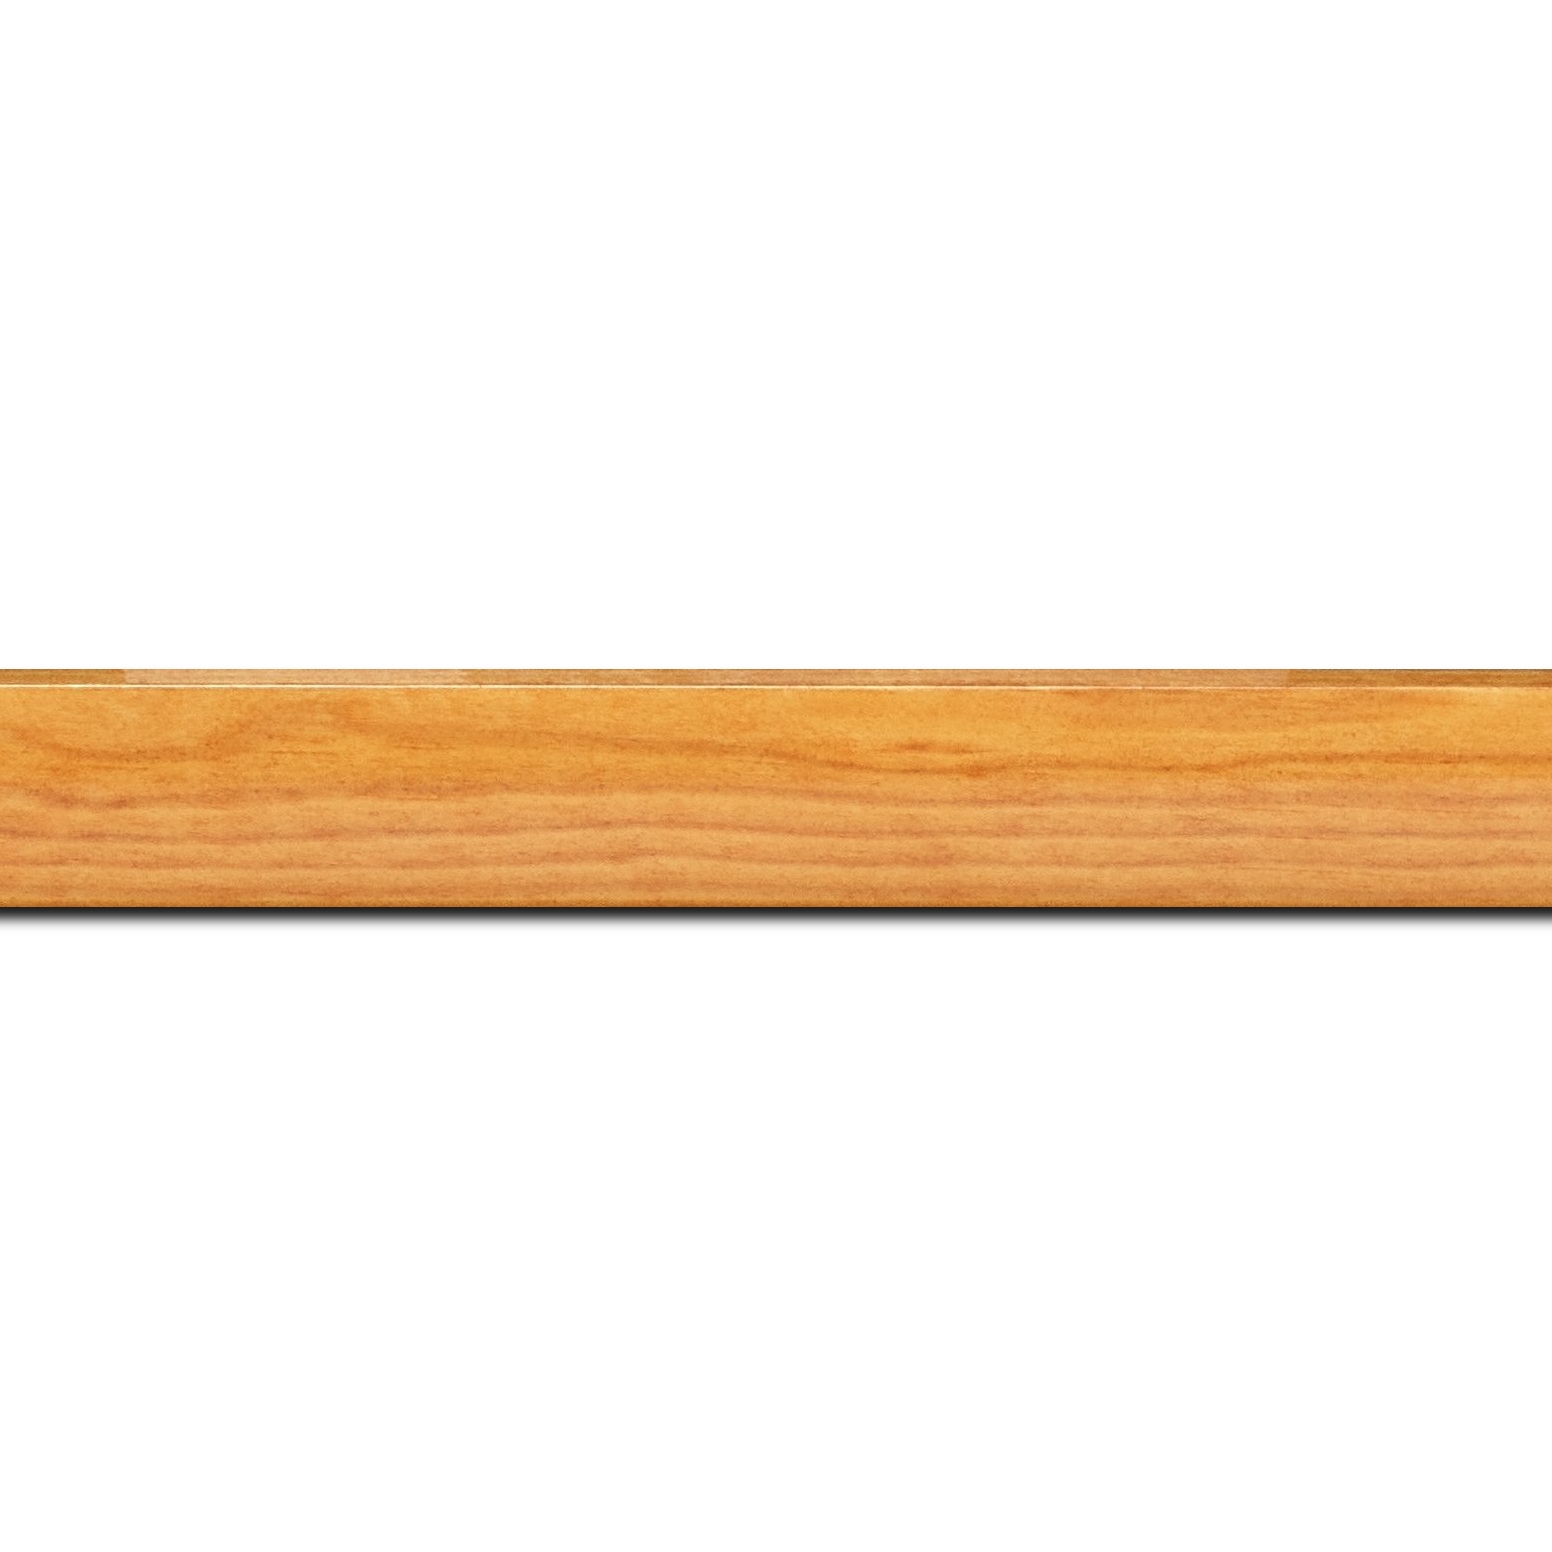 Baguette longueur 1.40m bois profil arrondi en pente plongeant largeur 2.4cm couleur jaune moutarde finition vernis brillant,veine du bois  apparent (pin) ,